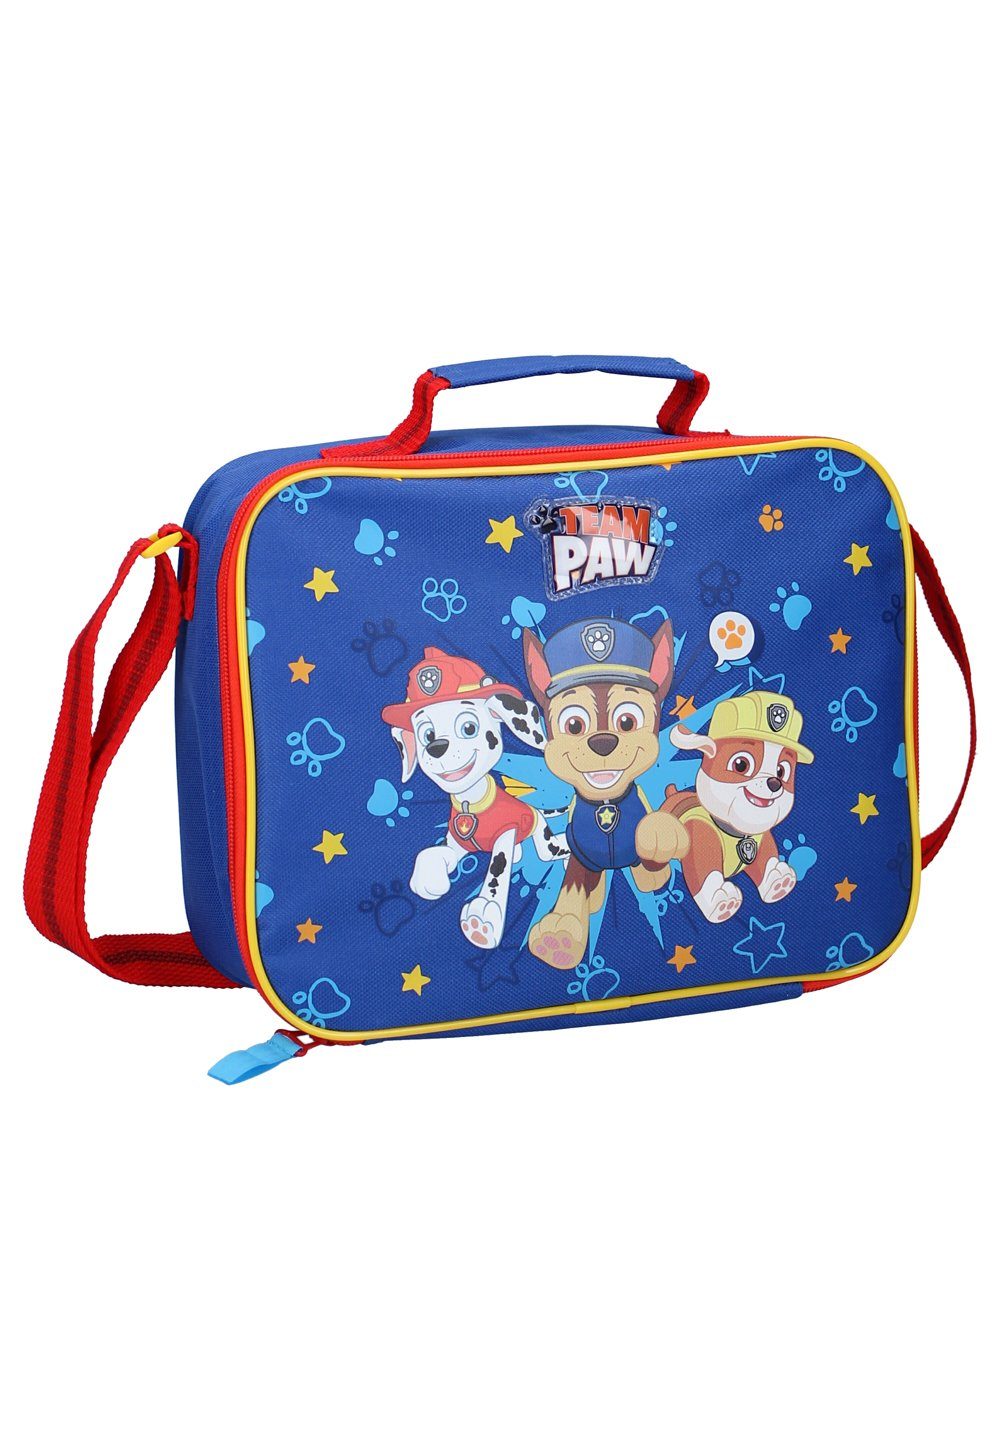 Spielzeug Kindertaschen PAW PATROL Umhängetasche Kinder Jungen Lunchbag Lunch-Tasche Schultertasche Kindergartentasche